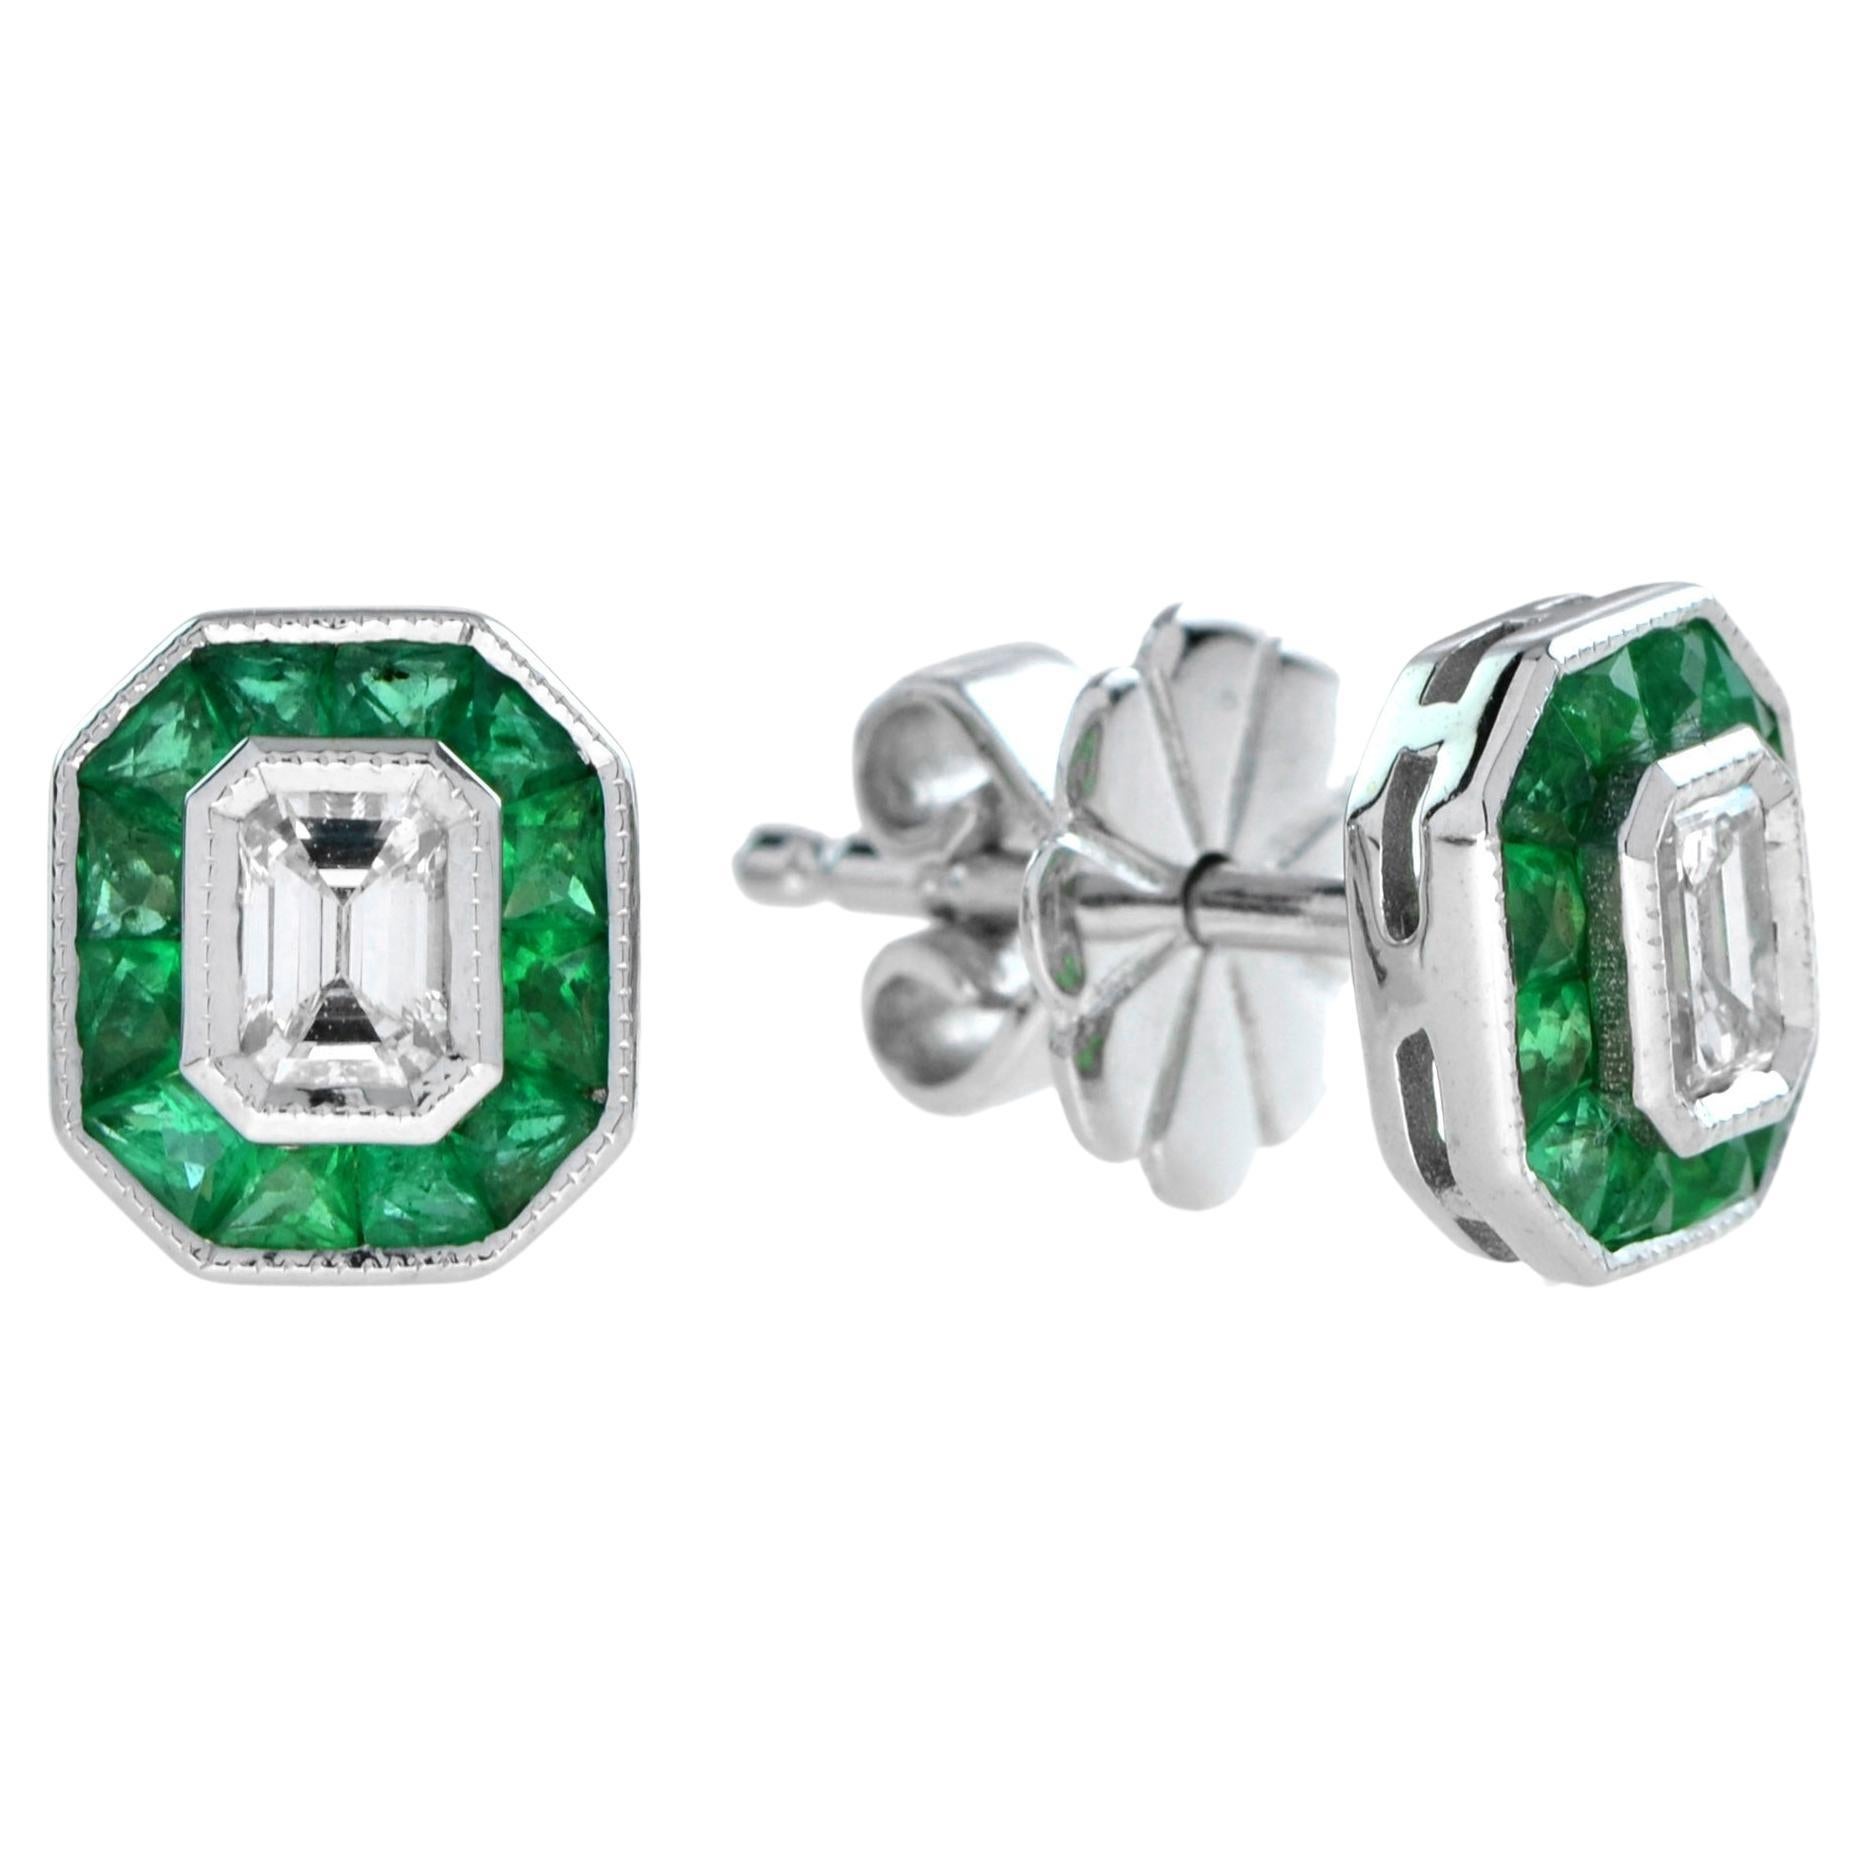 Emerald Cut Diamond Emerald Halo Stud Earrings in 18k White Gold